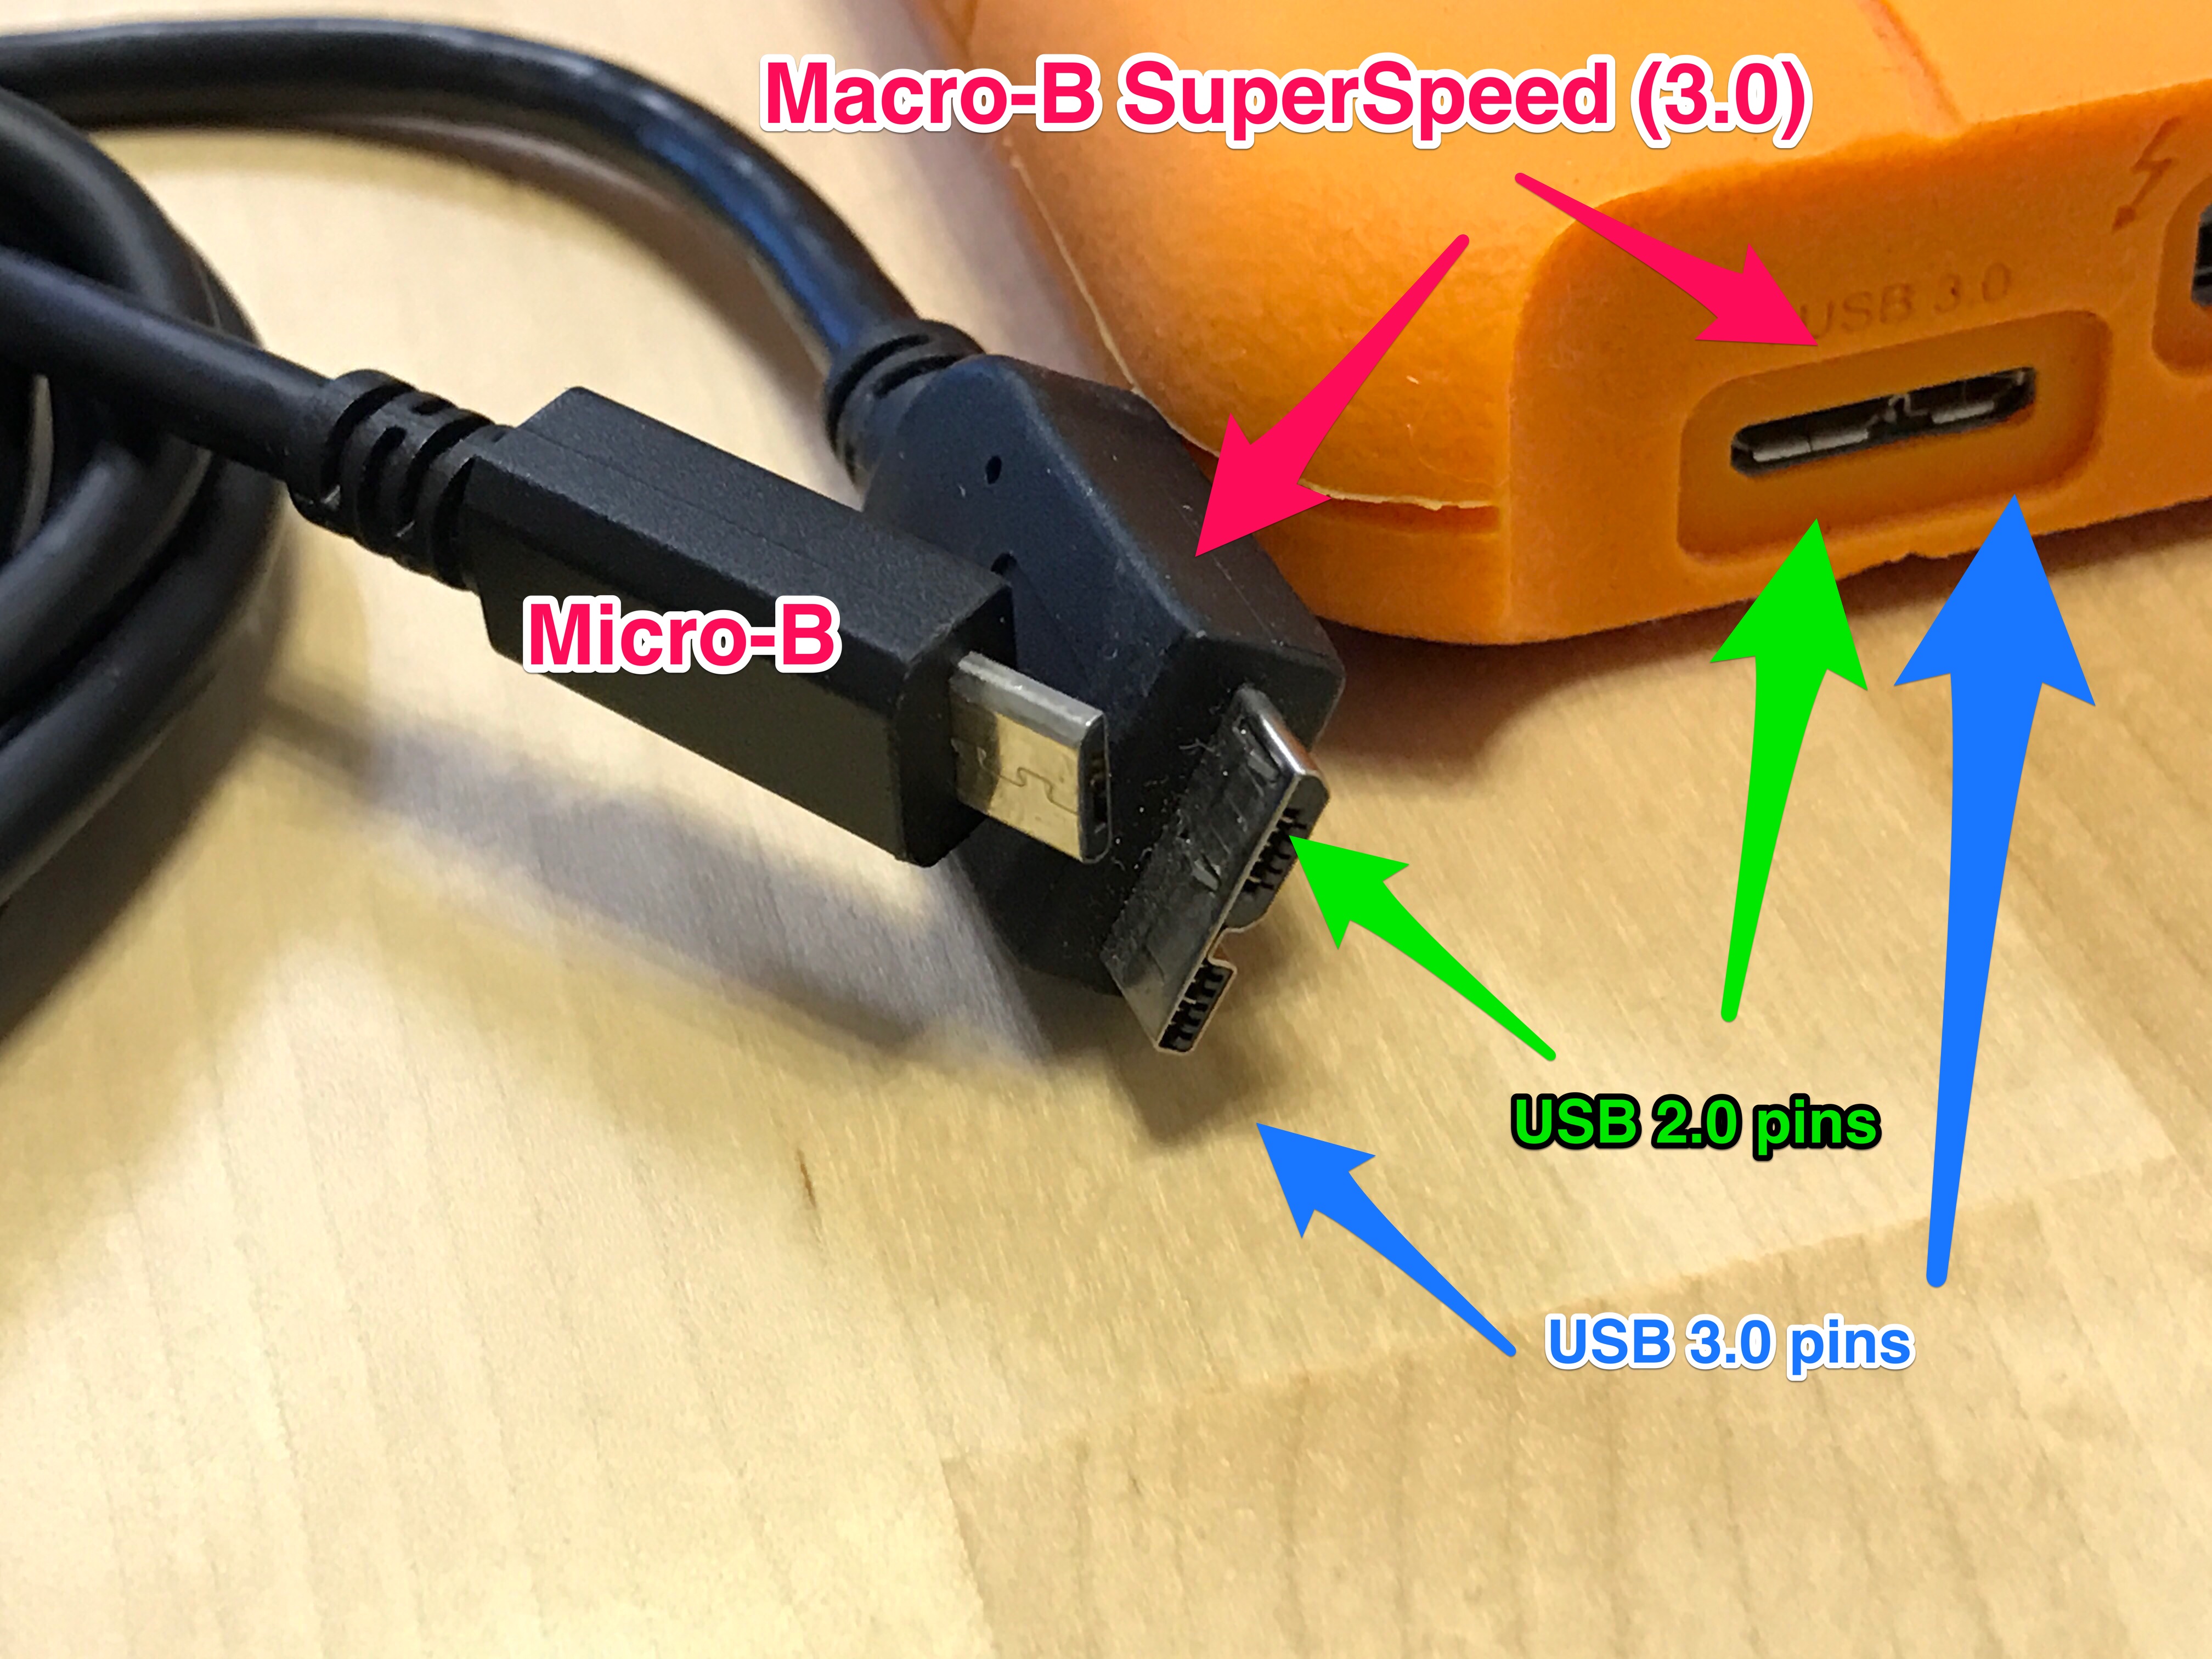 USB_Micro-B_USB_2.0_vs_USB_Micro-B_Super